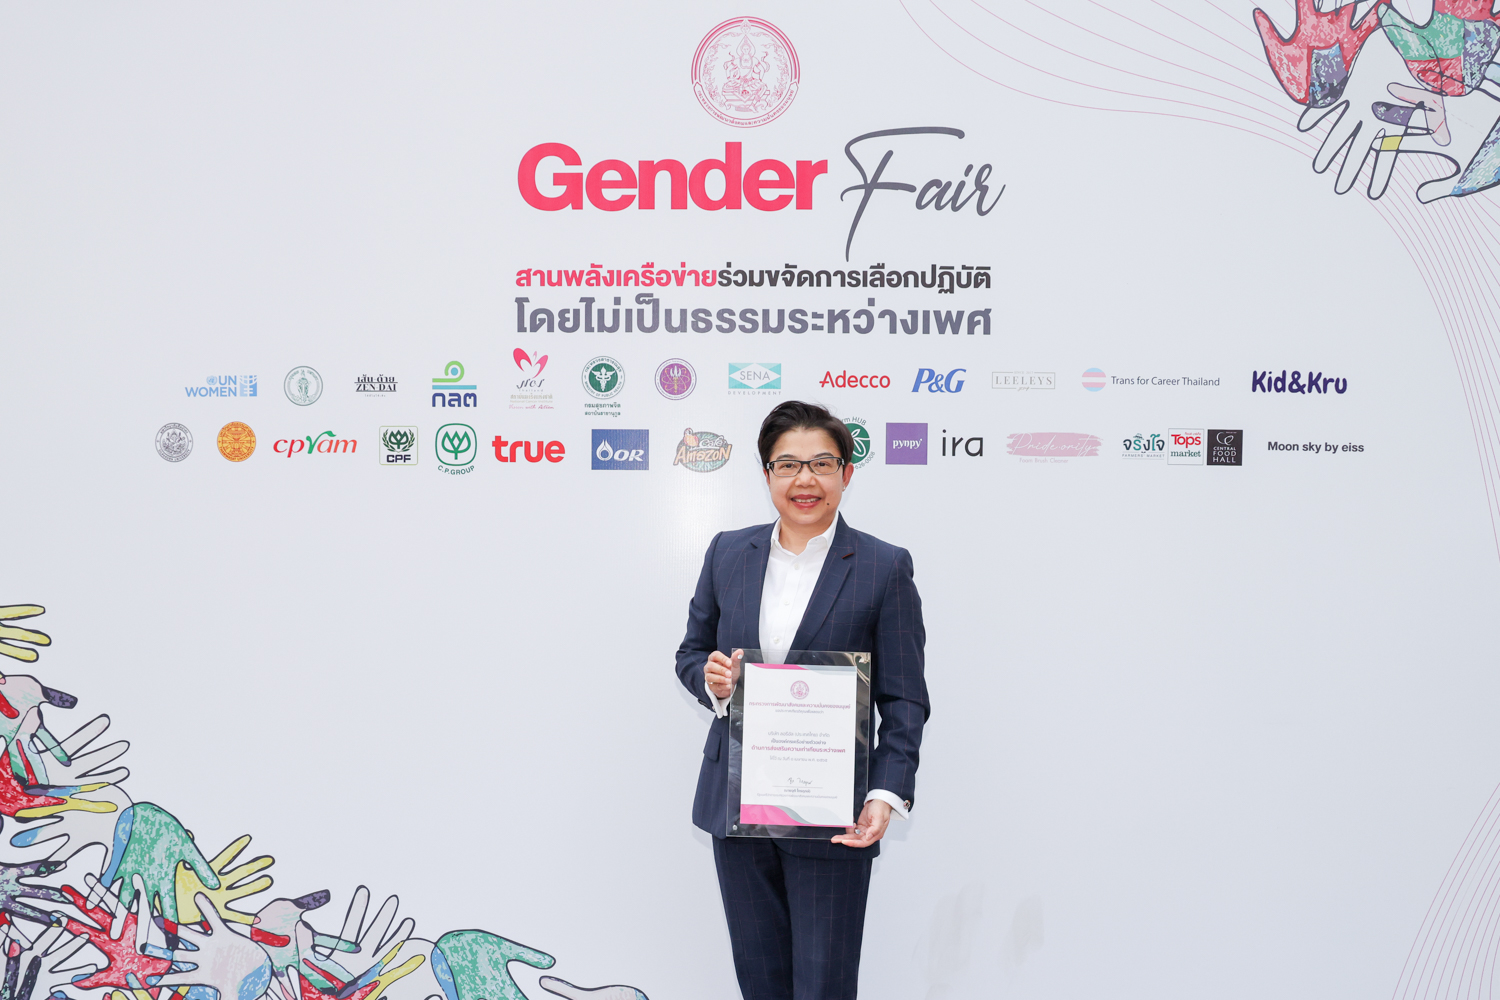 กรุงไทย-แอกซ่า ประกันชีวิต รับมอบประกาศเกียรติคุณองค์กรเครือข่ายตัวอย่างด้านการส่งเสริมความเท่าเทียมระหว่างเพศ